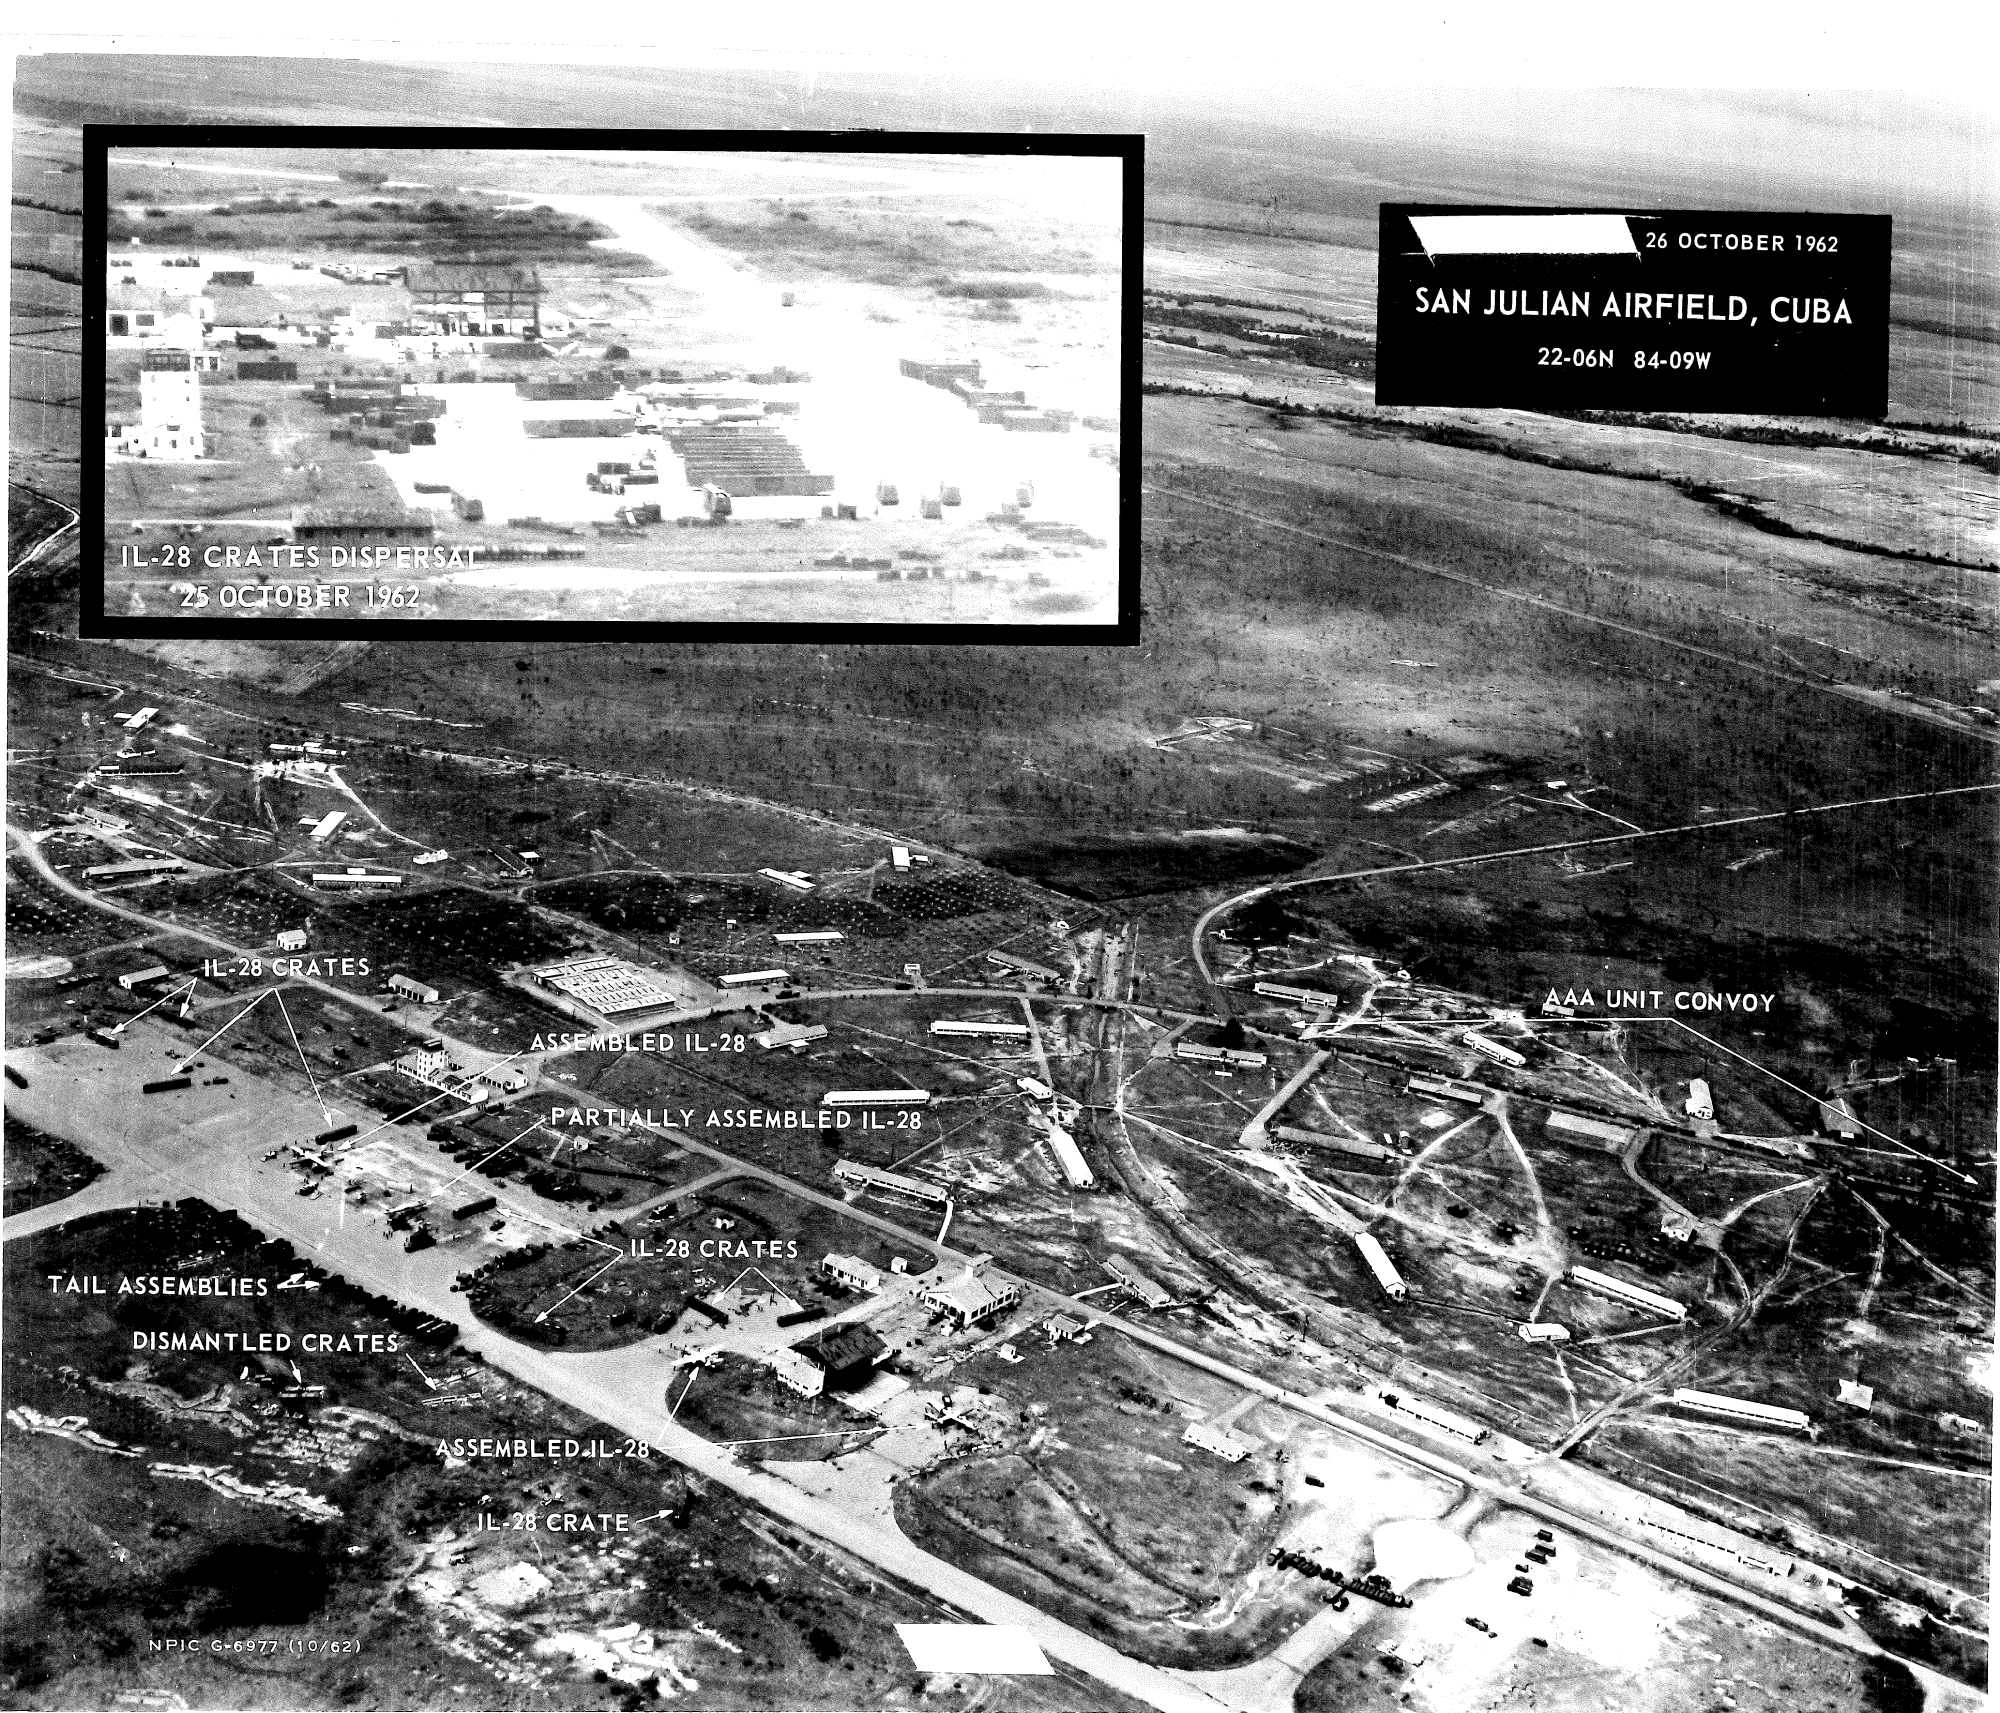 Imagen que muestra los lugares donde se estaban ensamblando los bombarderos Ilyushin-28 en Cuba.